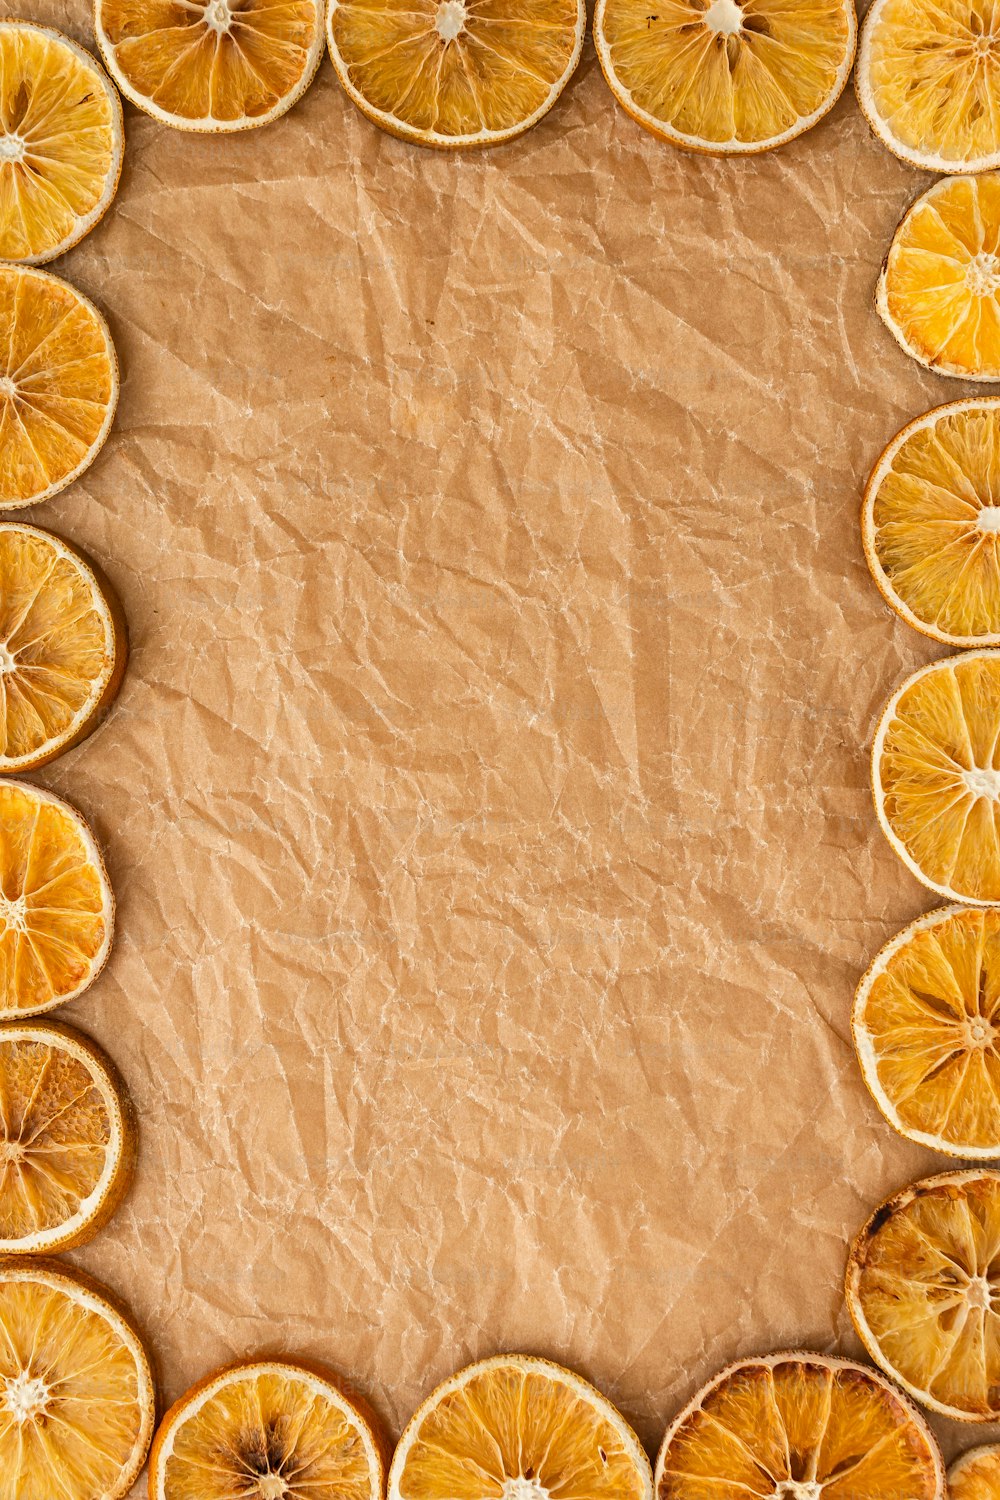 un groupe d’oranges tranchées disposées en rectangle